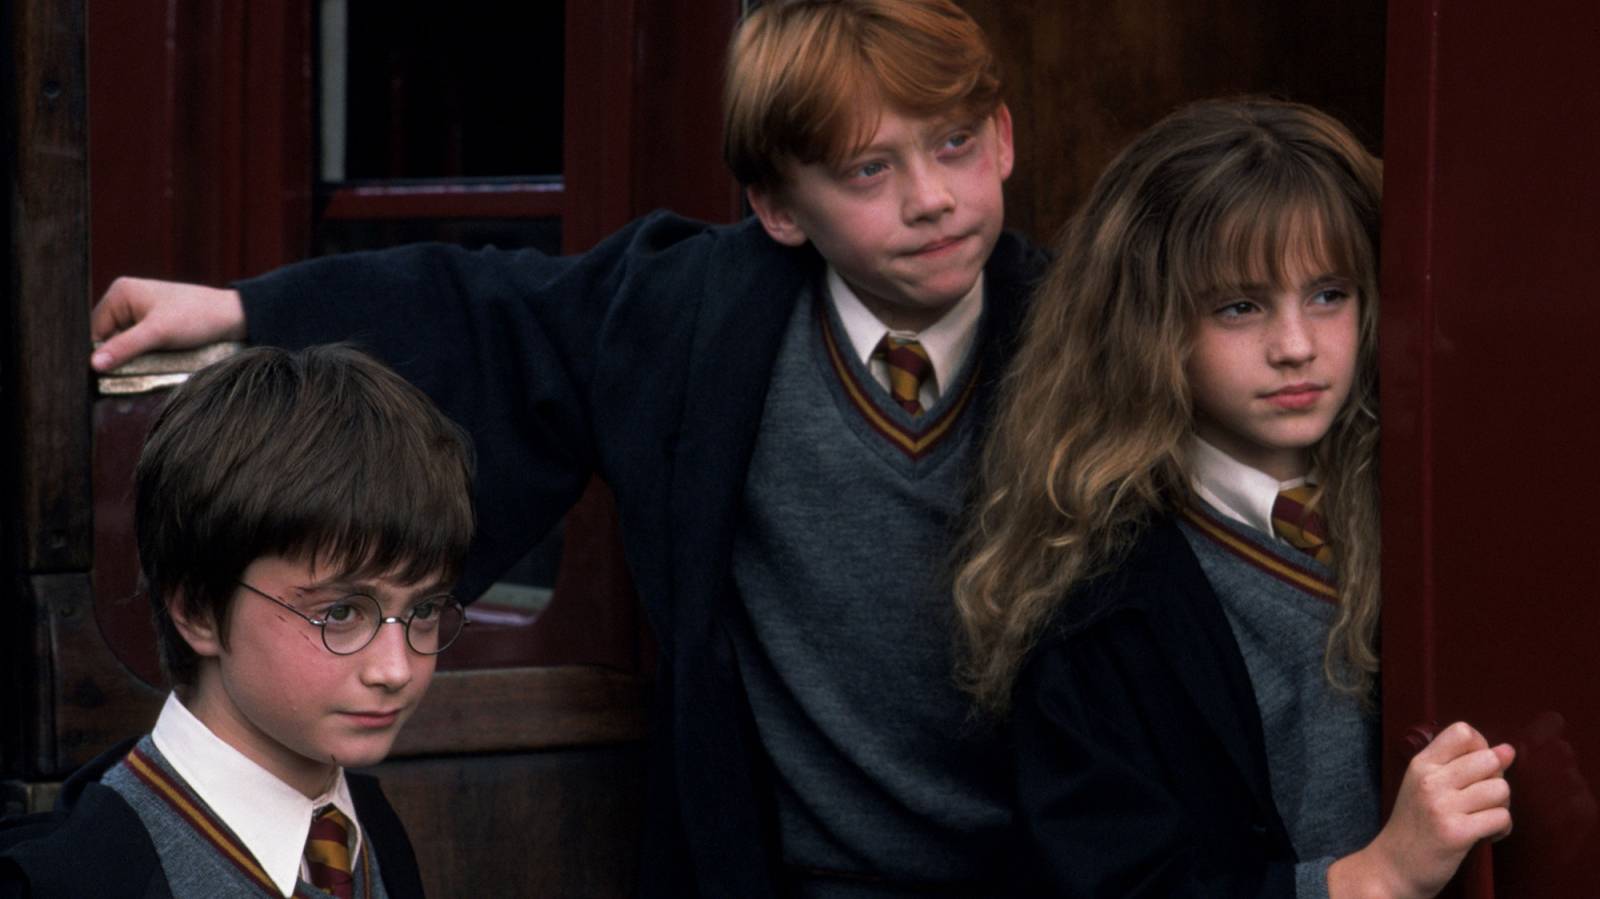 Kadr z filmu o przygodach Harryego Pottera